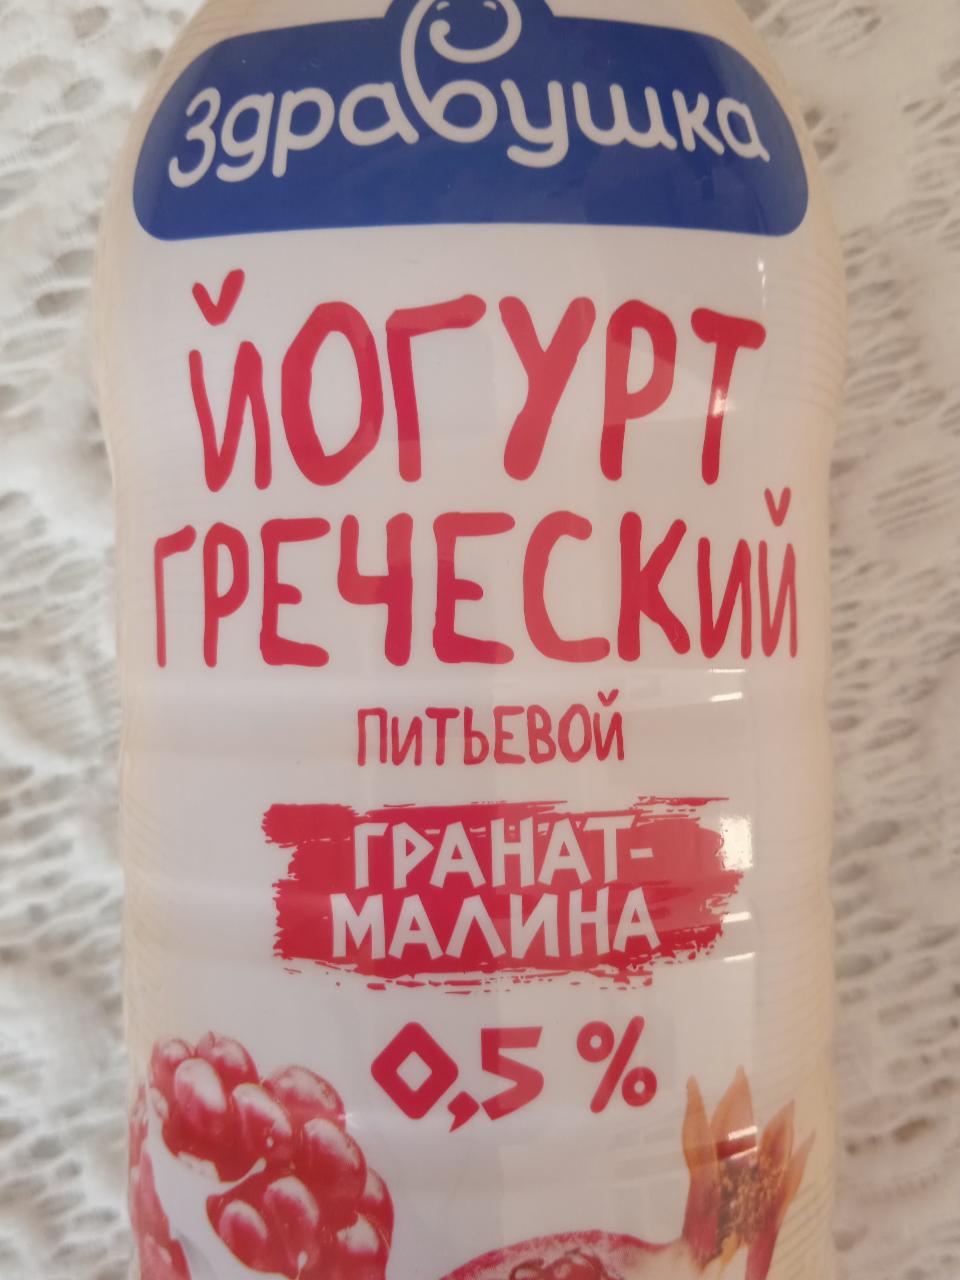 Фото - Йогурт греческий с наполнителем гранат-малина 0.5% Здравушка